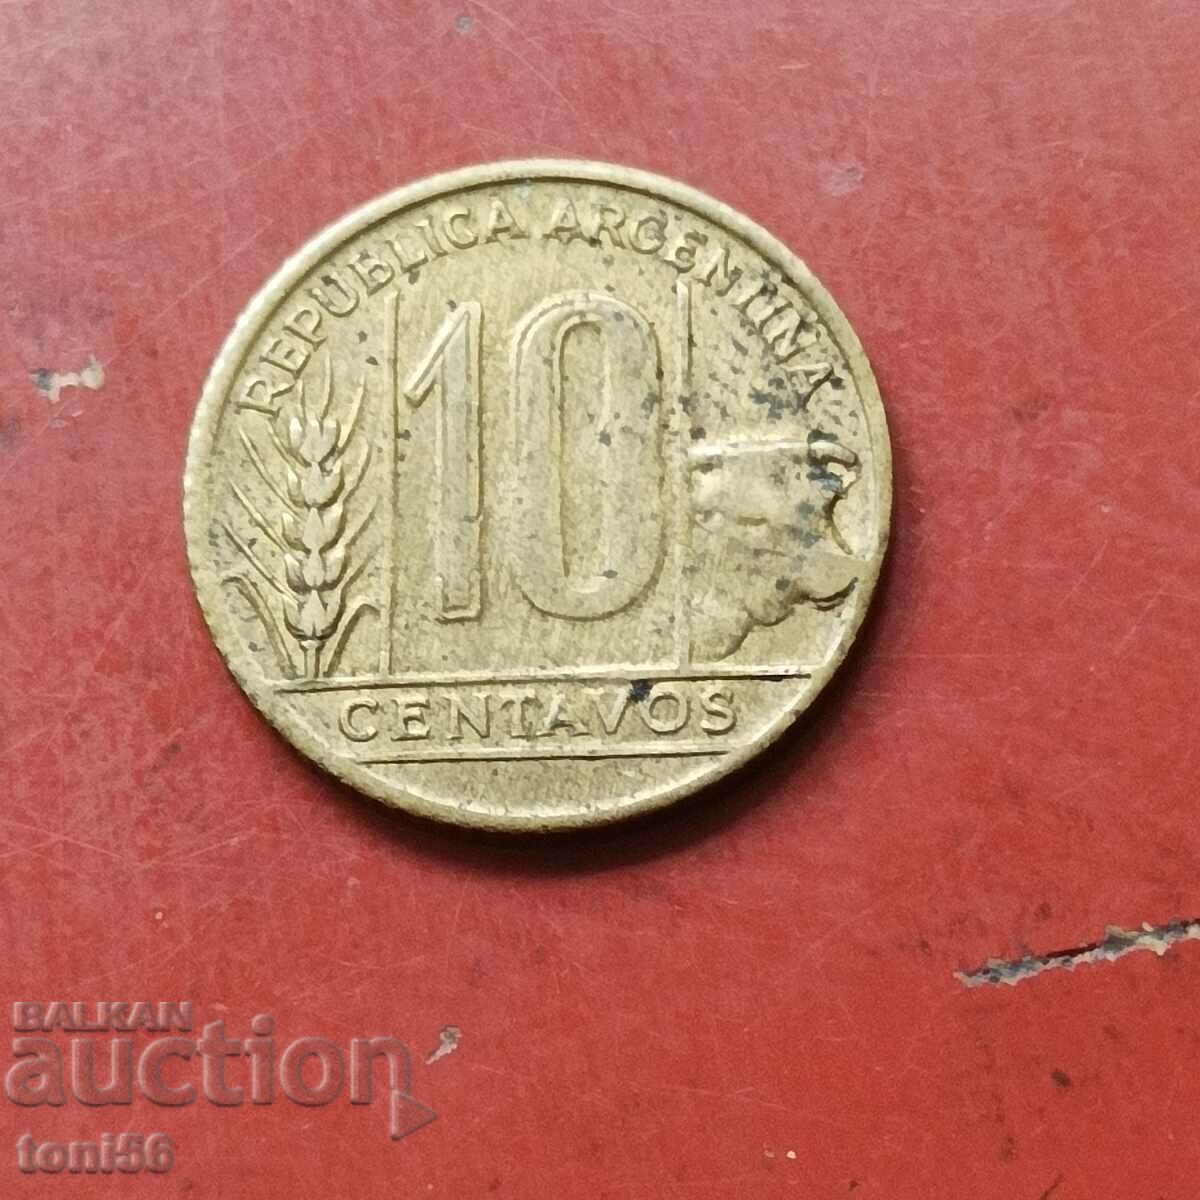 Argentina 10 centavos 1950